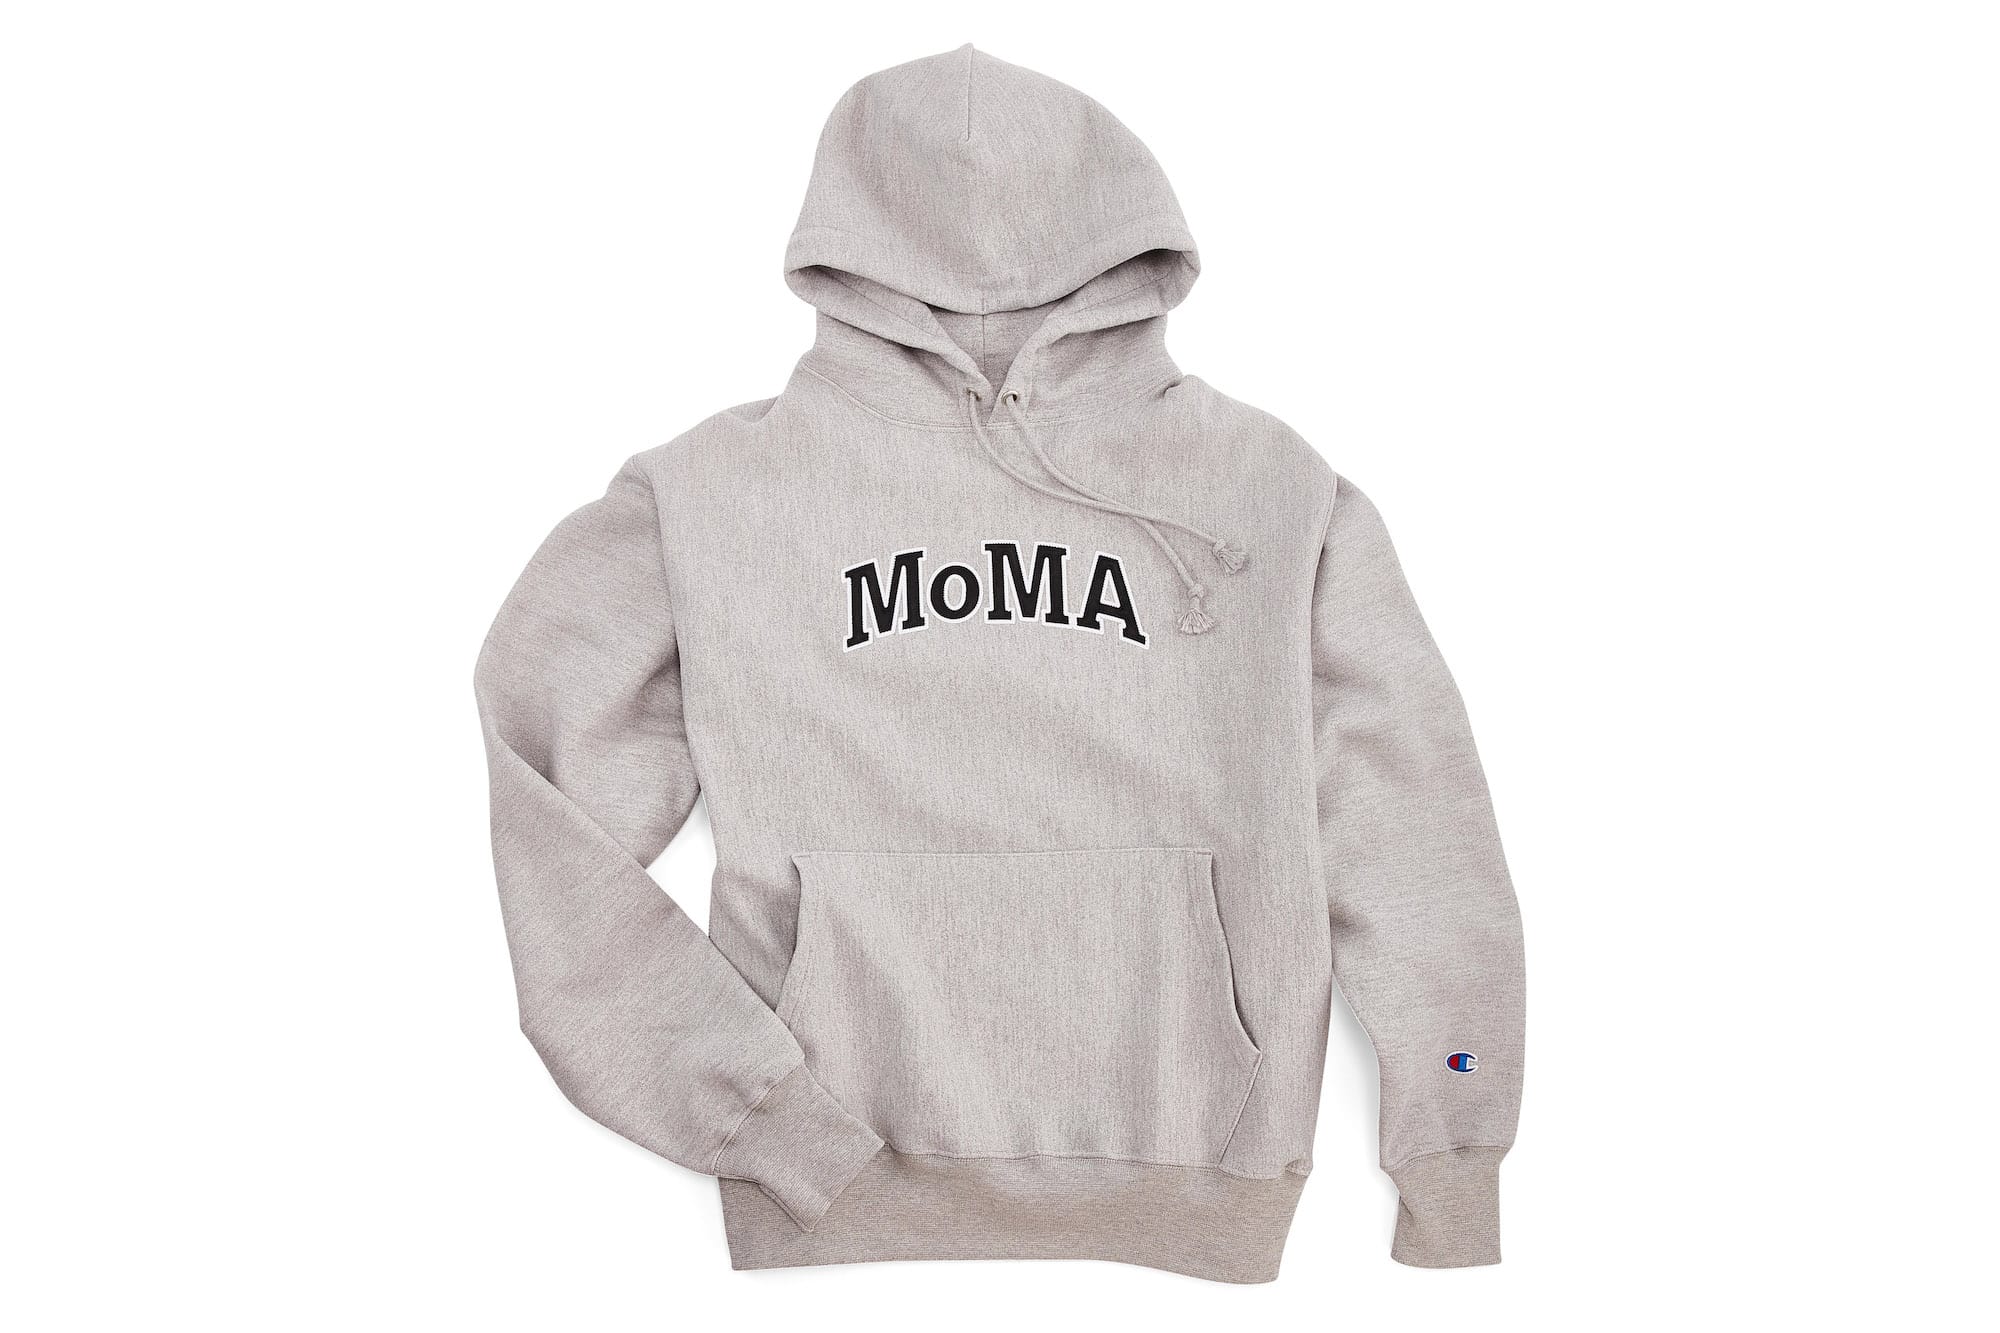 moma sweatshirt